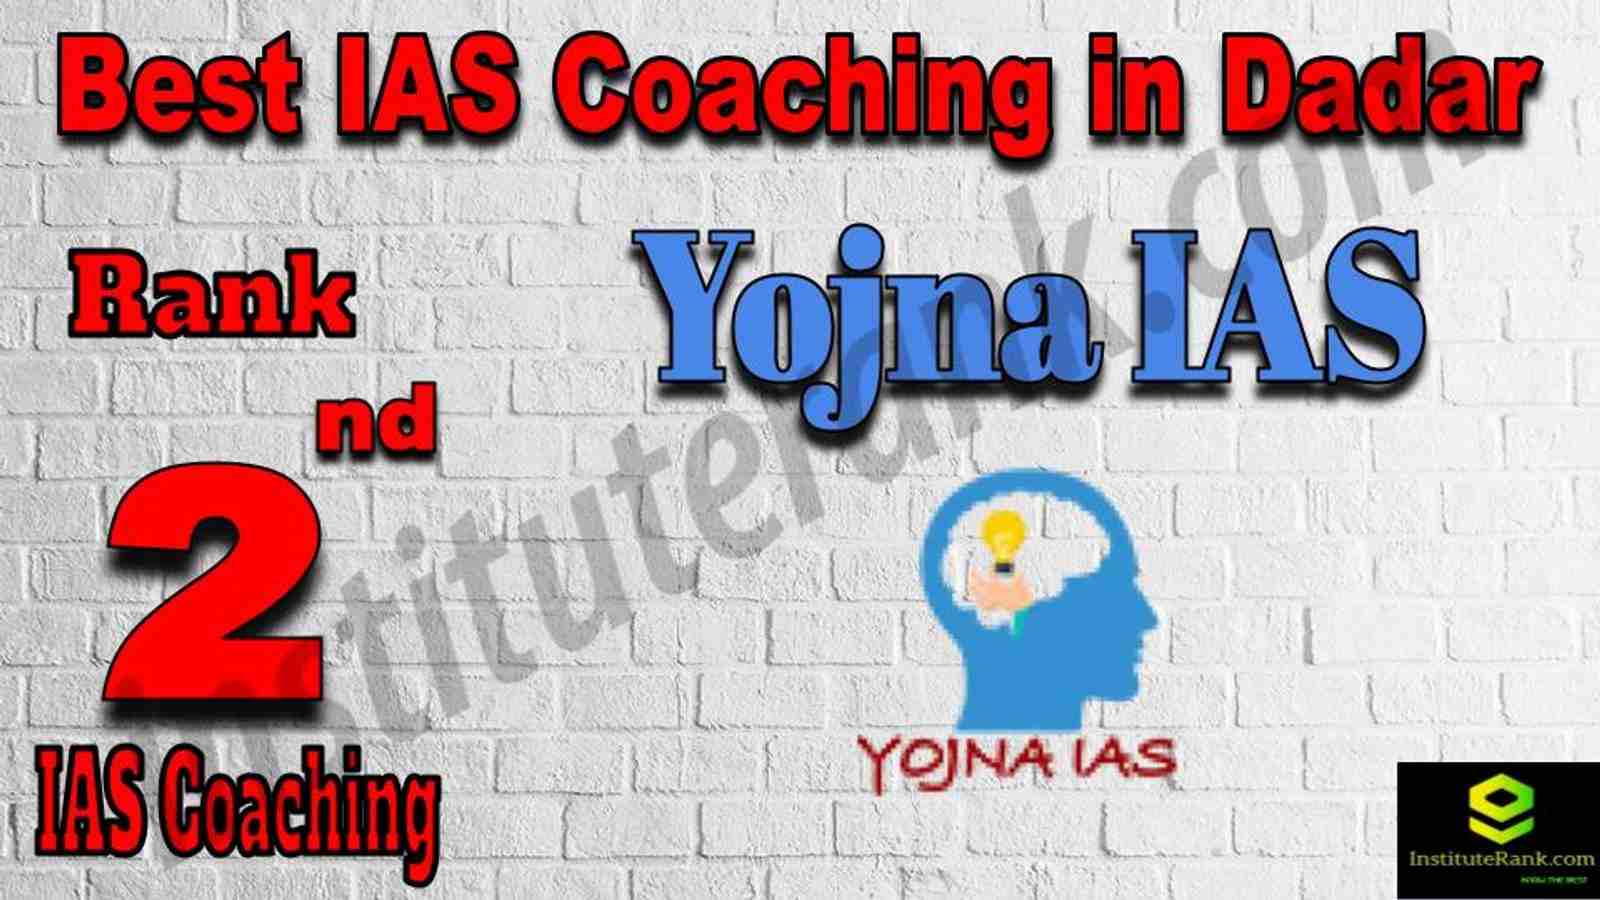 2nd Best IAS Coaching in Dadar